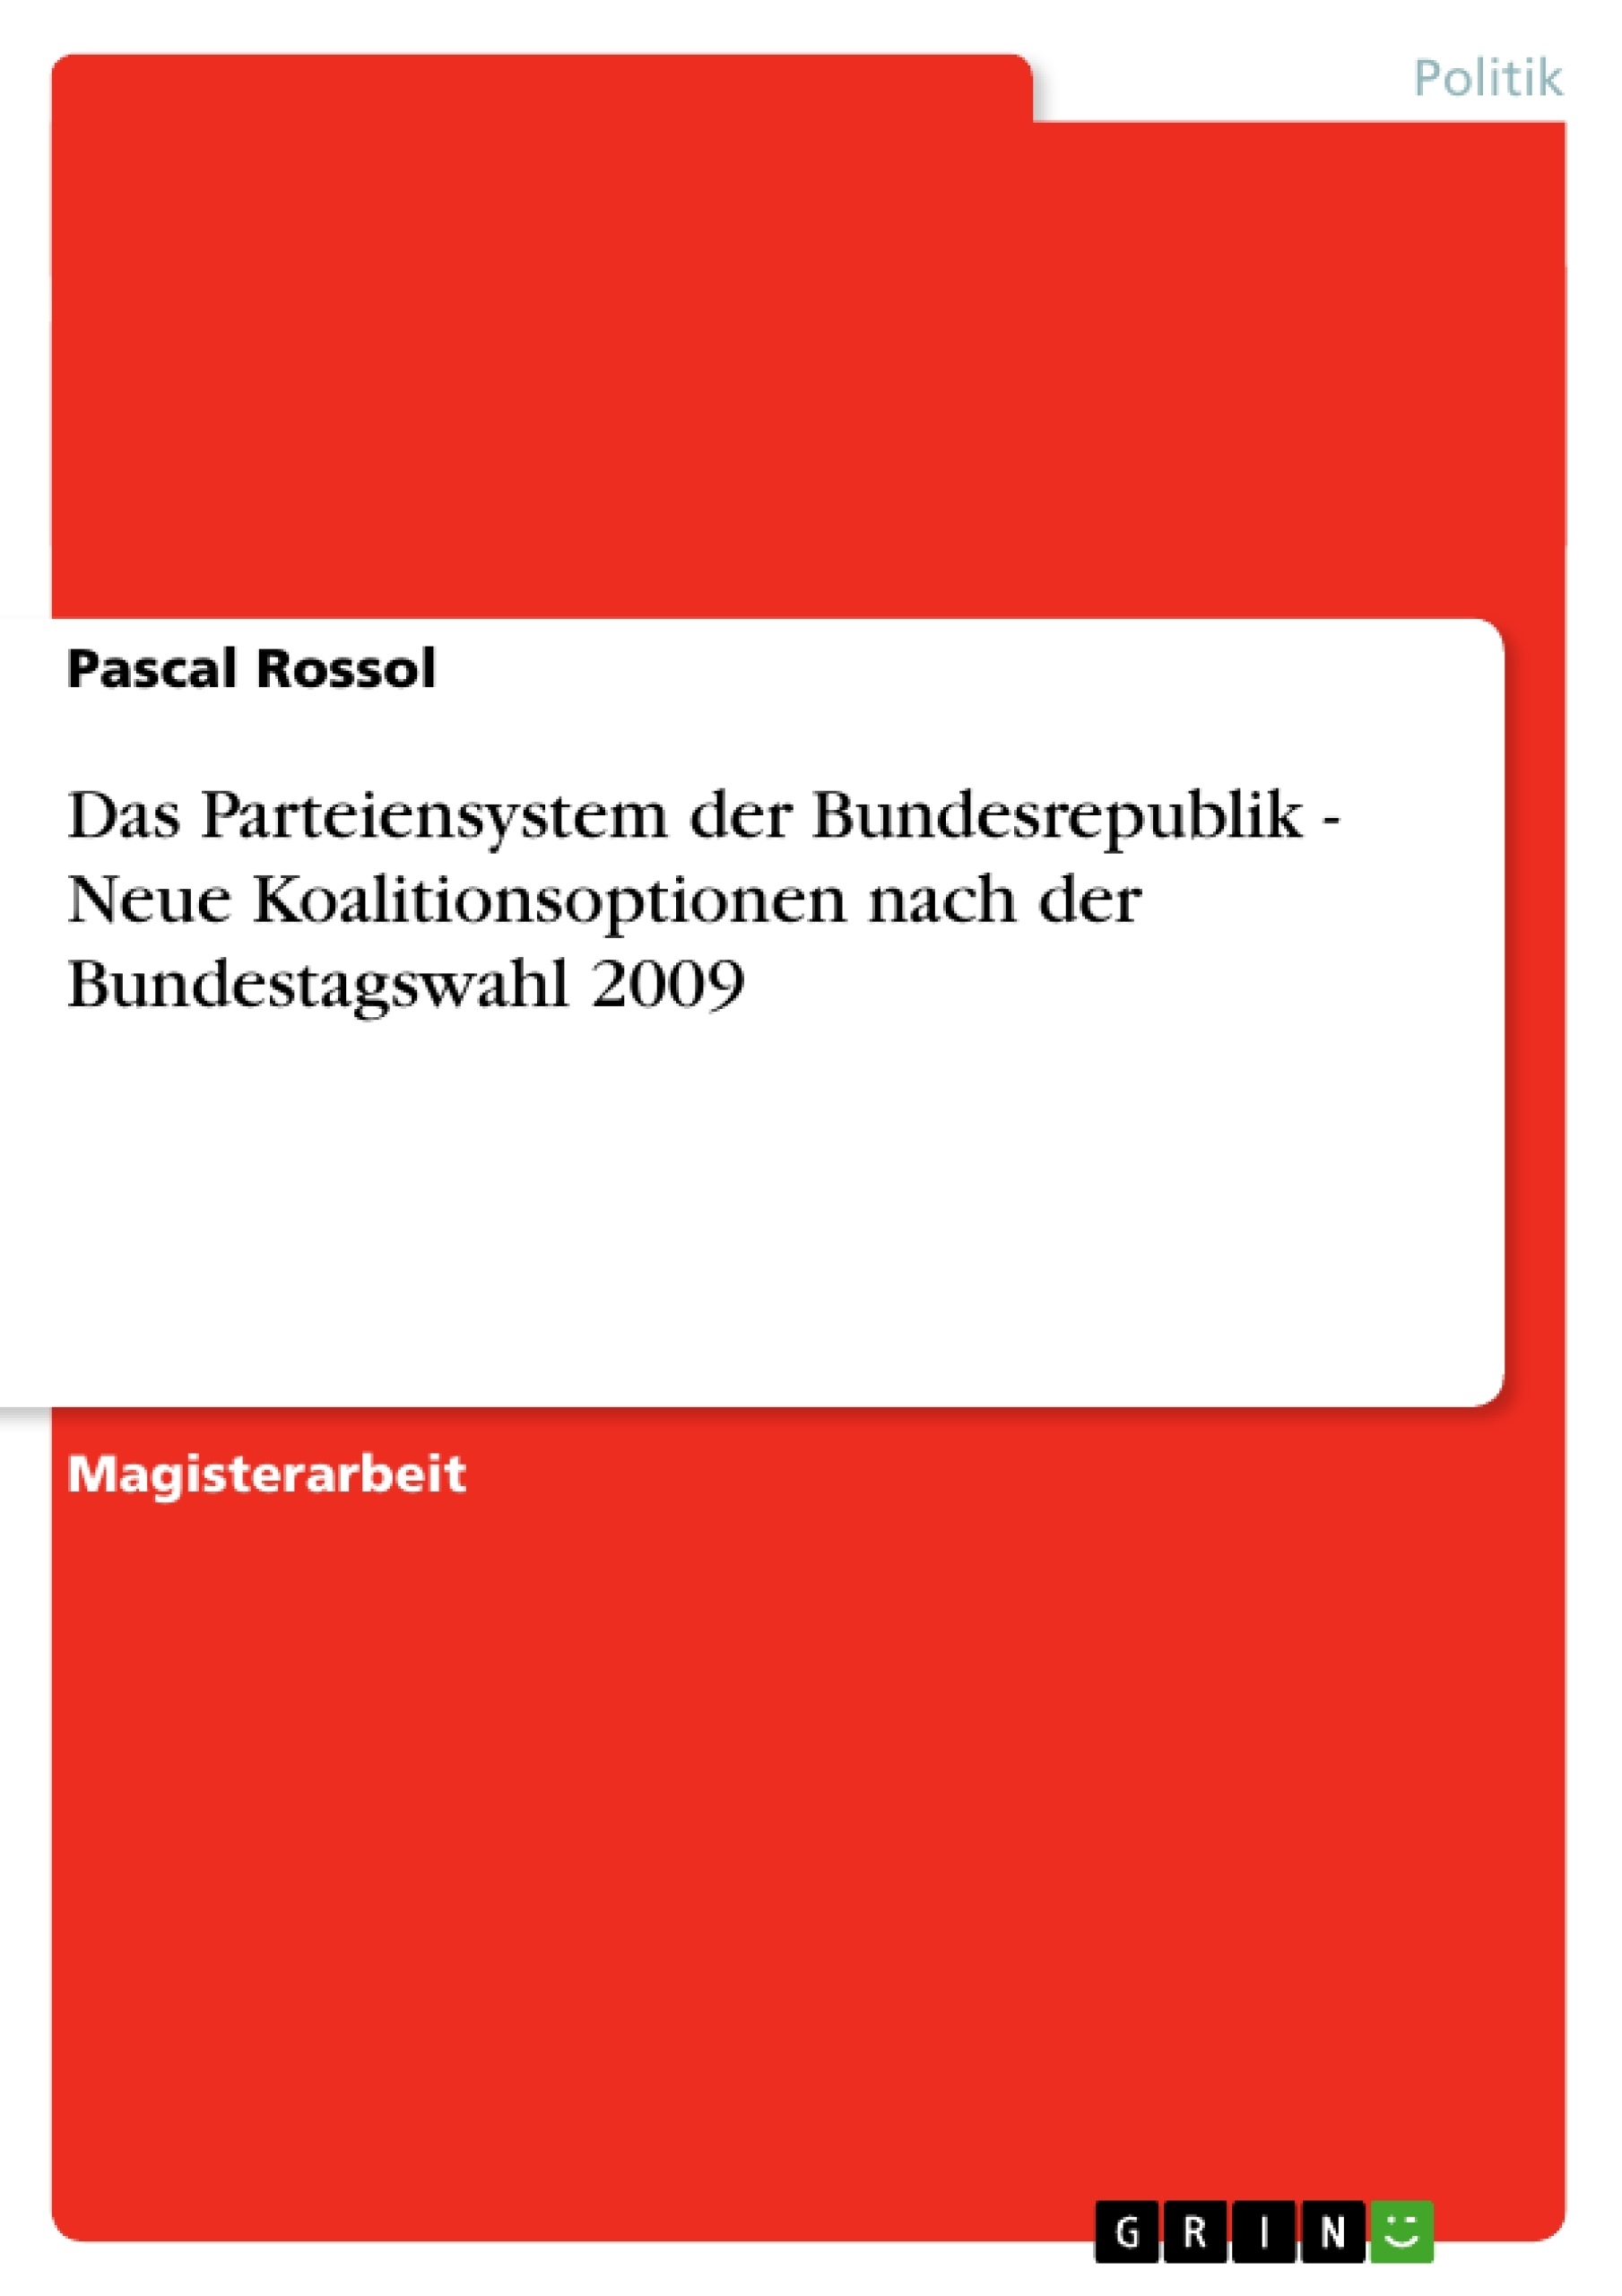 Título: Das Parteiensystem der Bundesrepublik - Neue Koalitionsoptionen nach der Bundestagswahl 2009